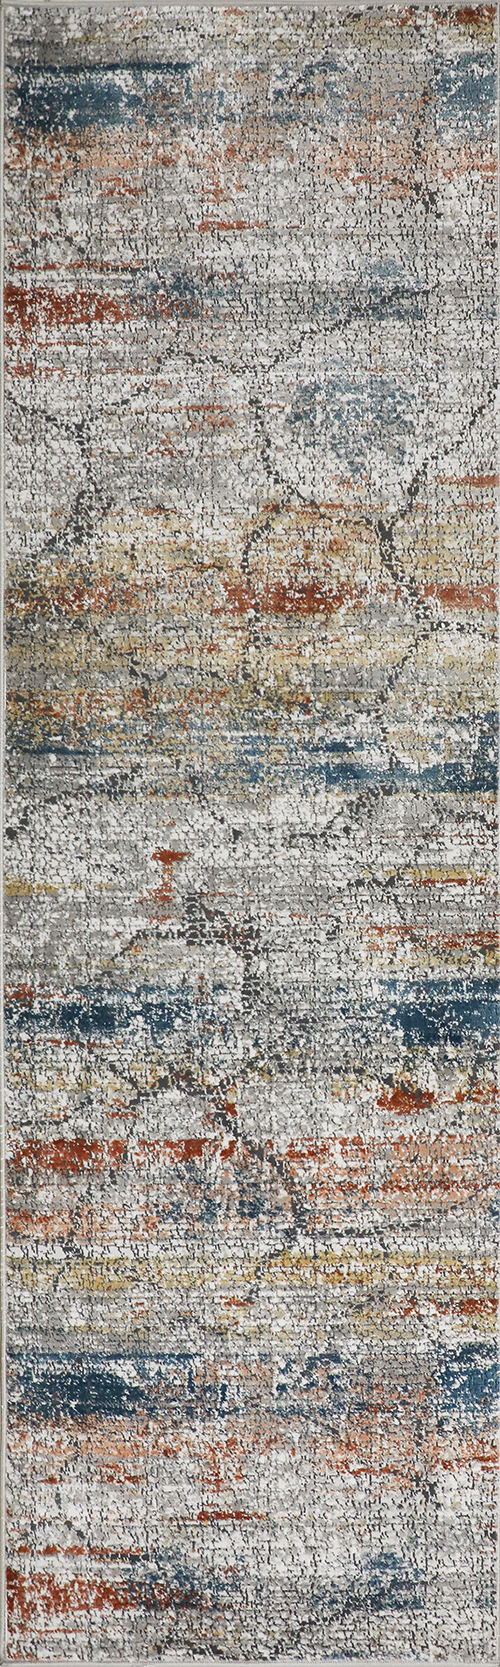 Nourison Rugs - Rustic Textures Runner RUS11 Rug in Multicolour - 2.3m x 0.66m